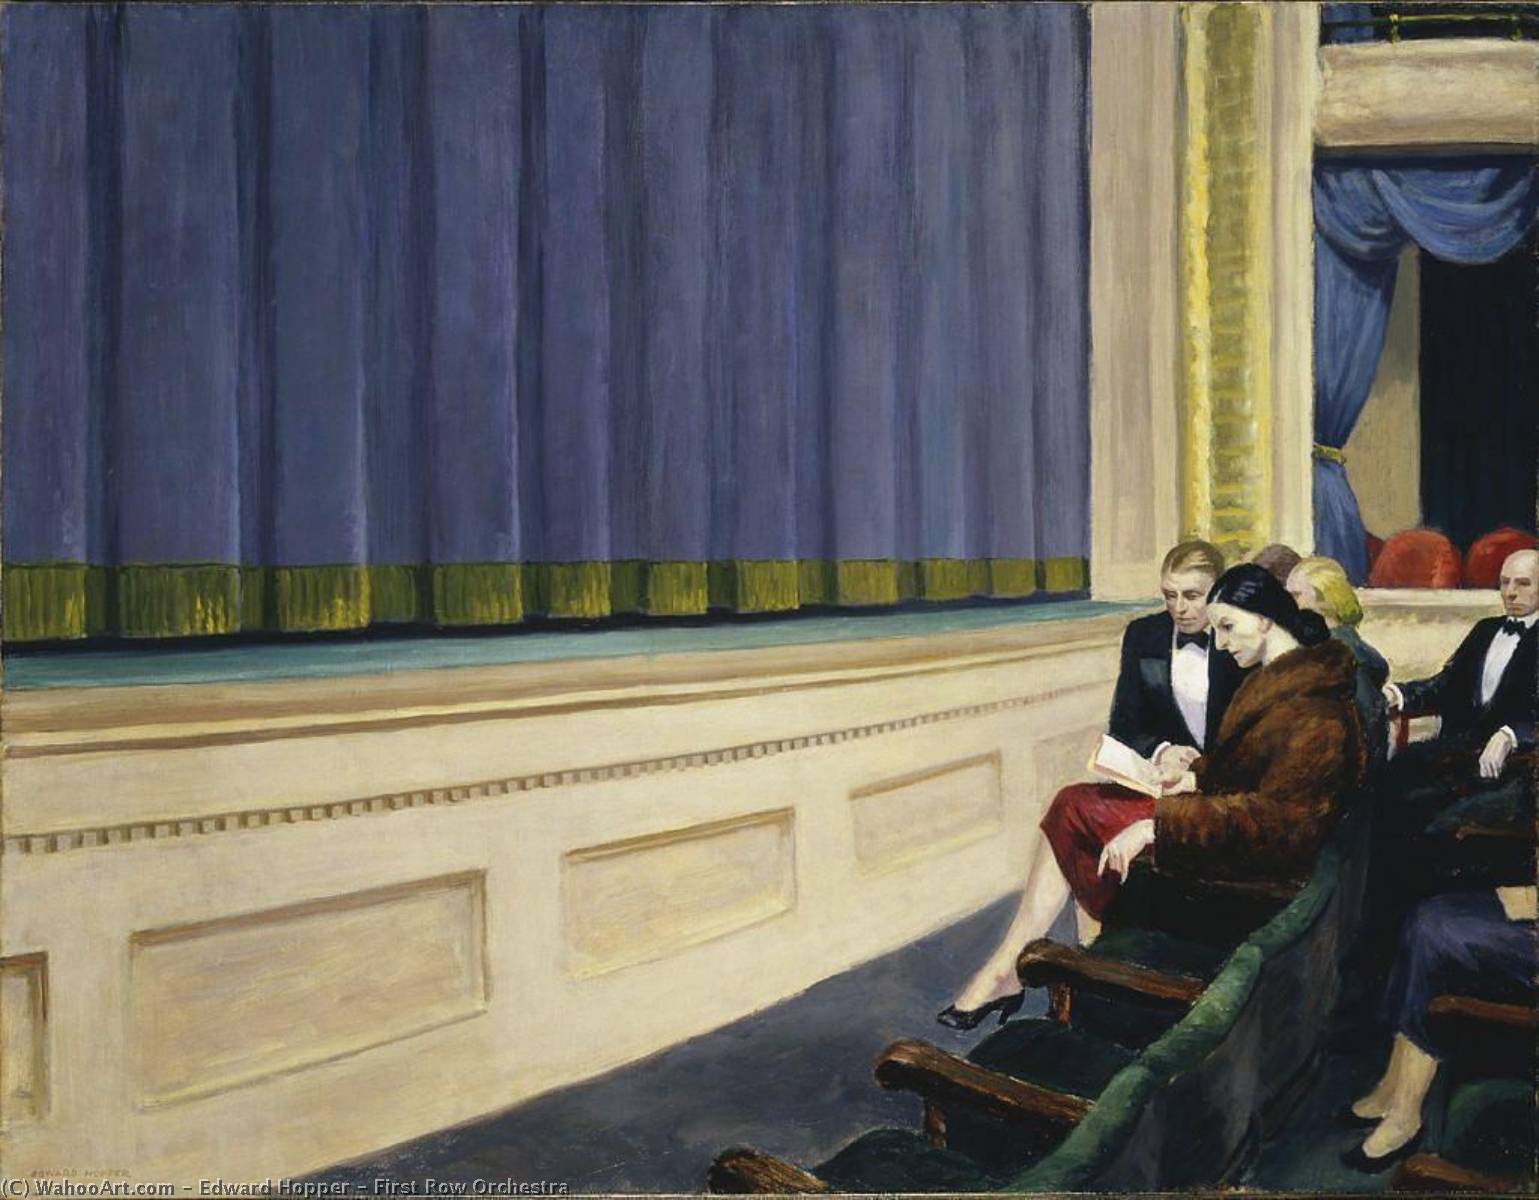 WikiOO.org - Enciclopédia das Belas Artes - Pintura, Arte por Edward Hopper - First Row Orchestra